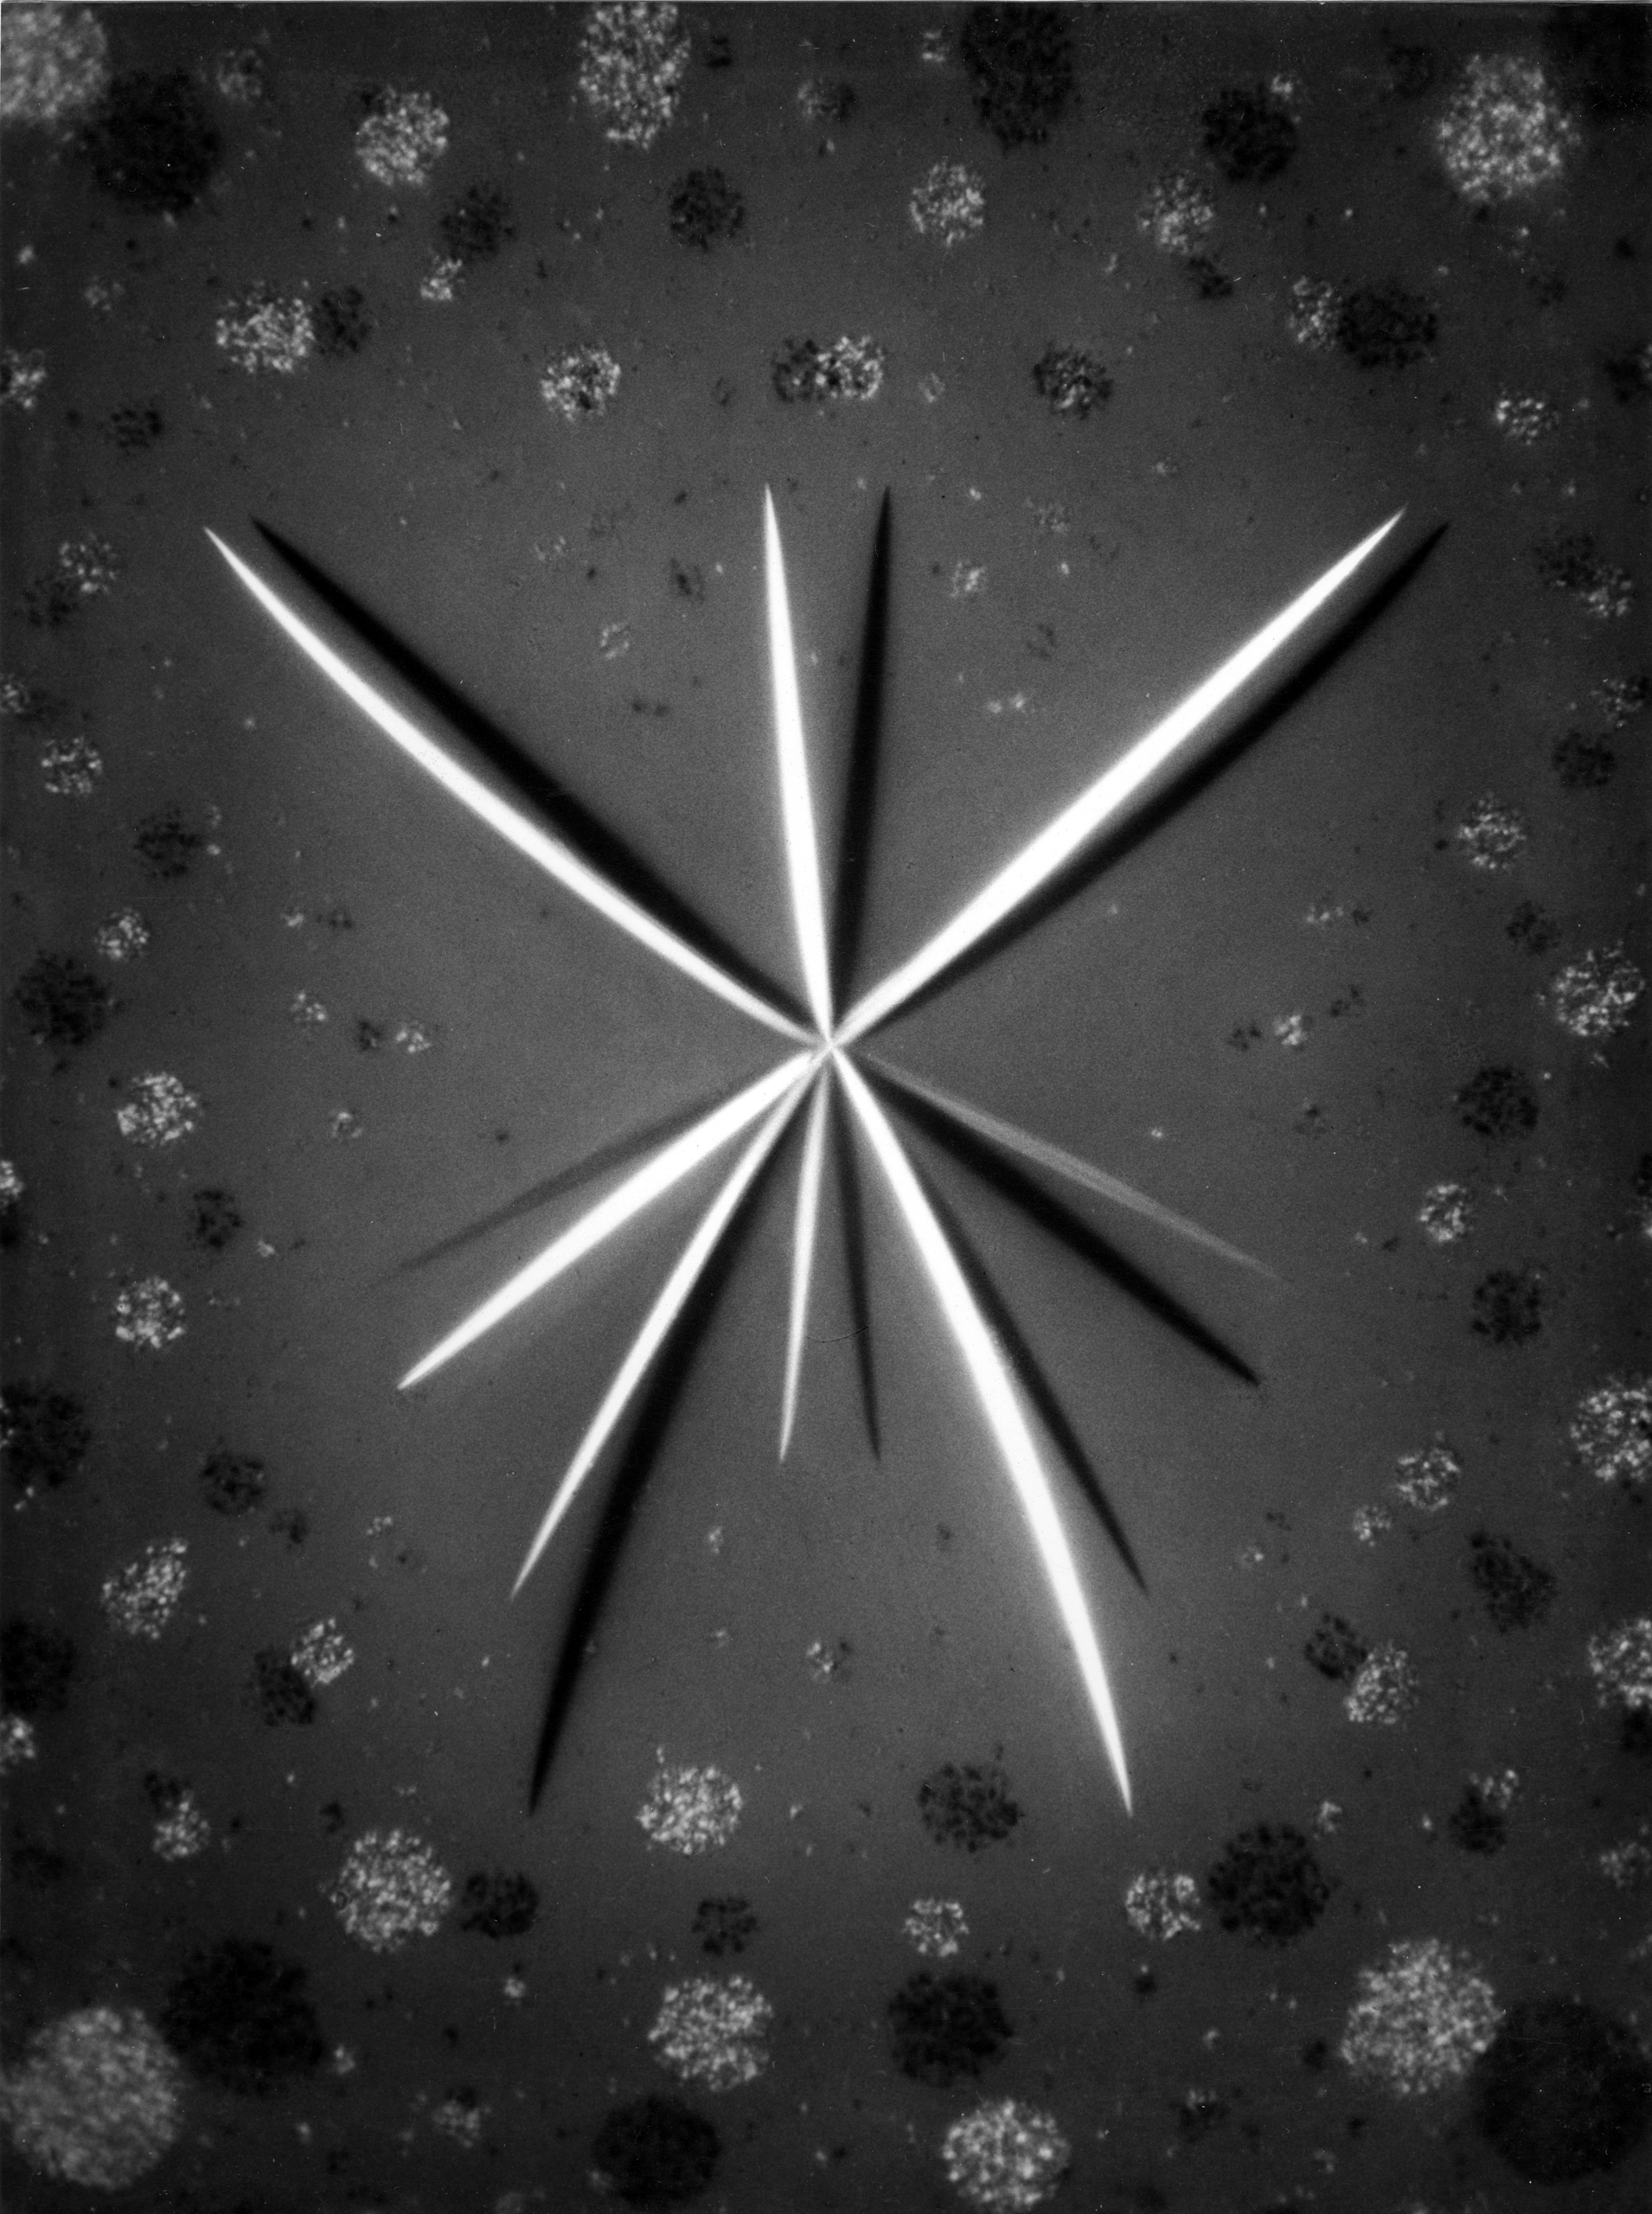 Rhubarb-crystals (Radix rhei), 1950